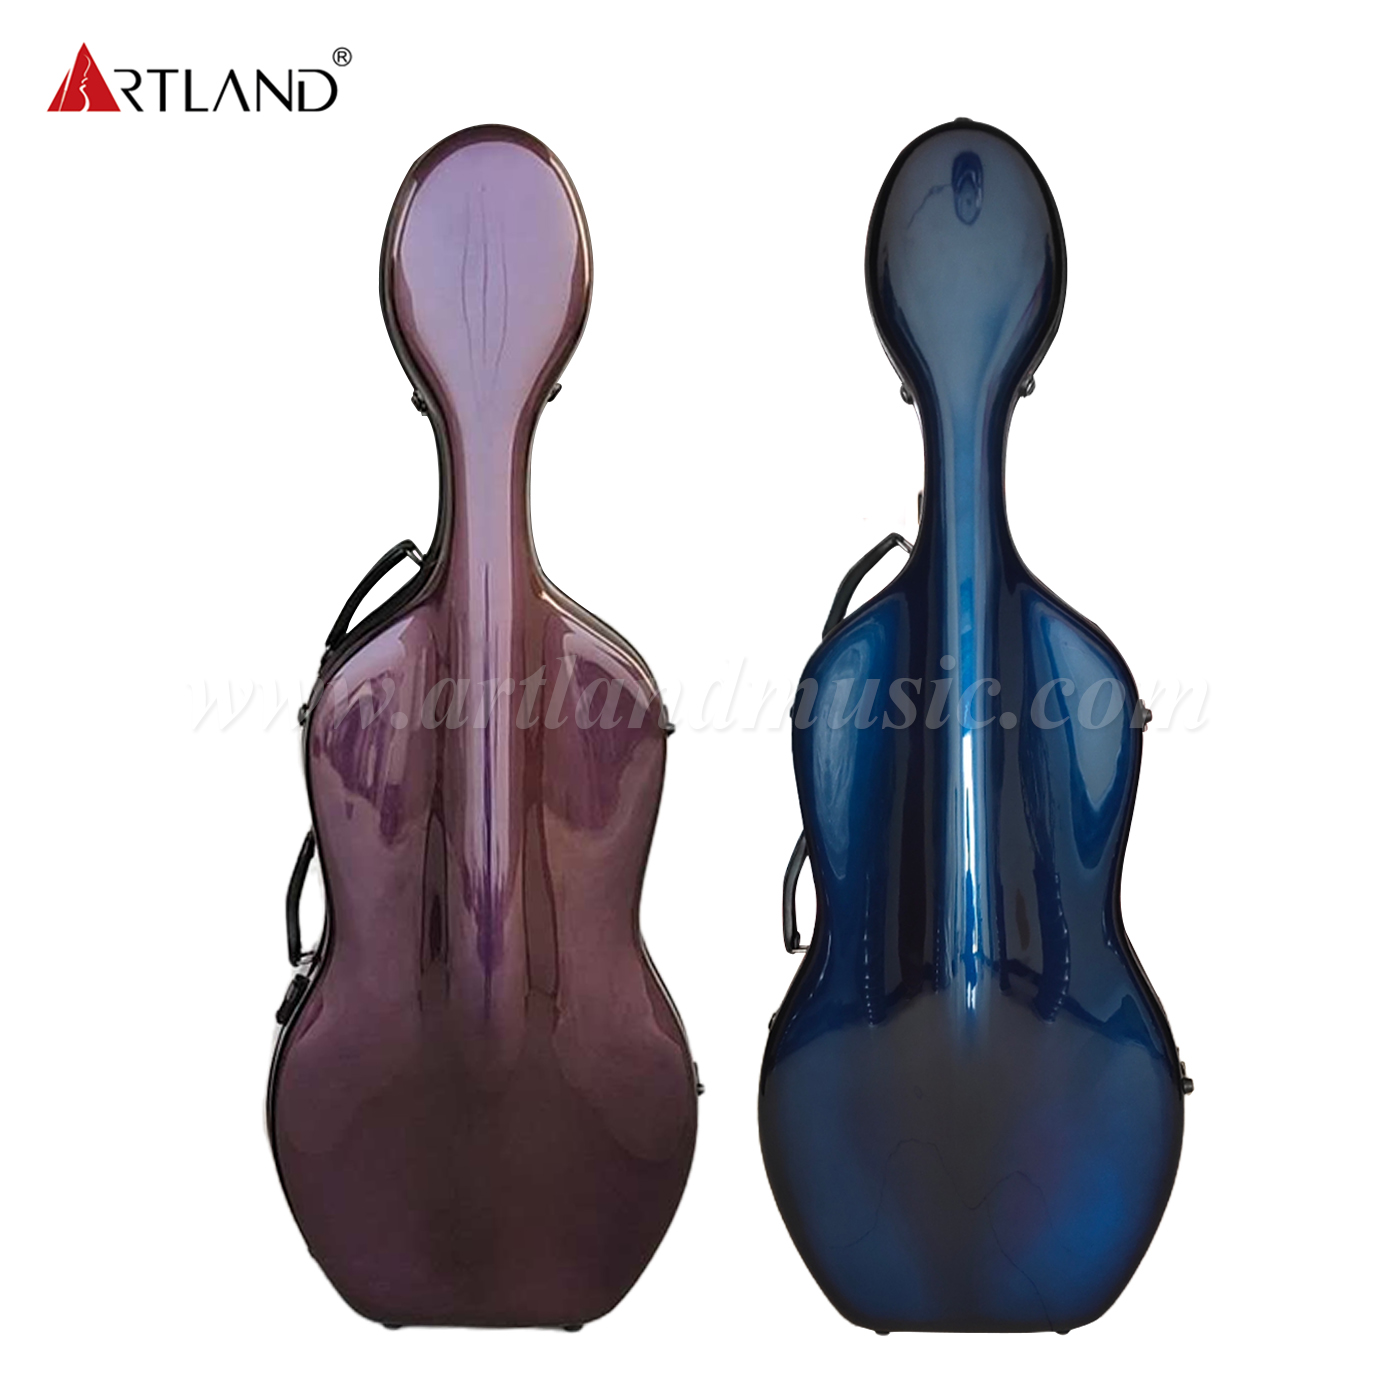 Estuche para violonchelo de fibra de carbono degradado de azul a morado (CSC602C)